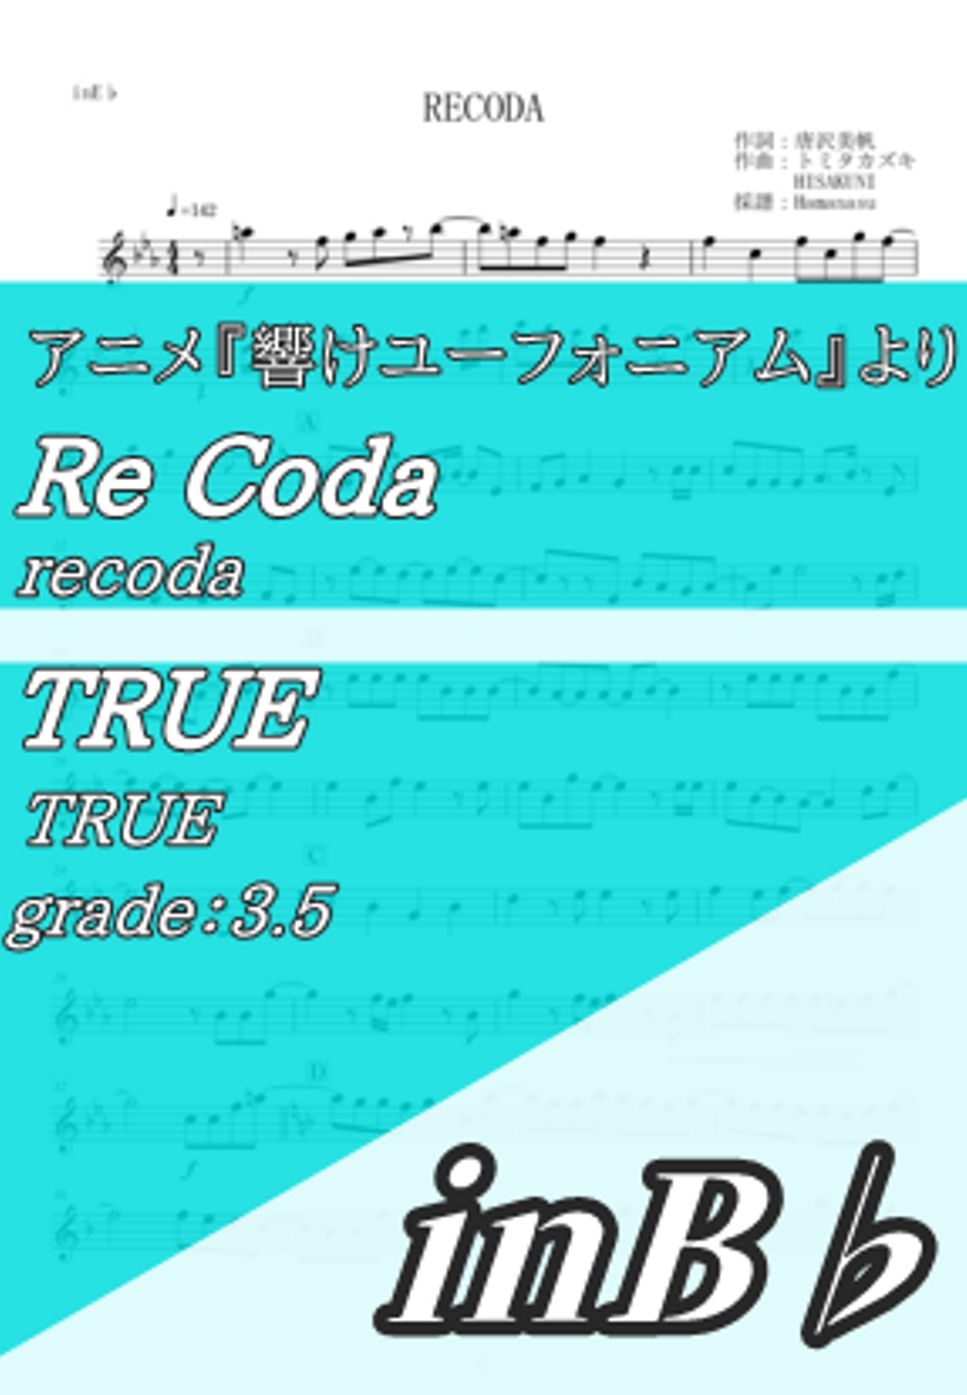 TRUE - RECODA (inB♭) by Hamanasu